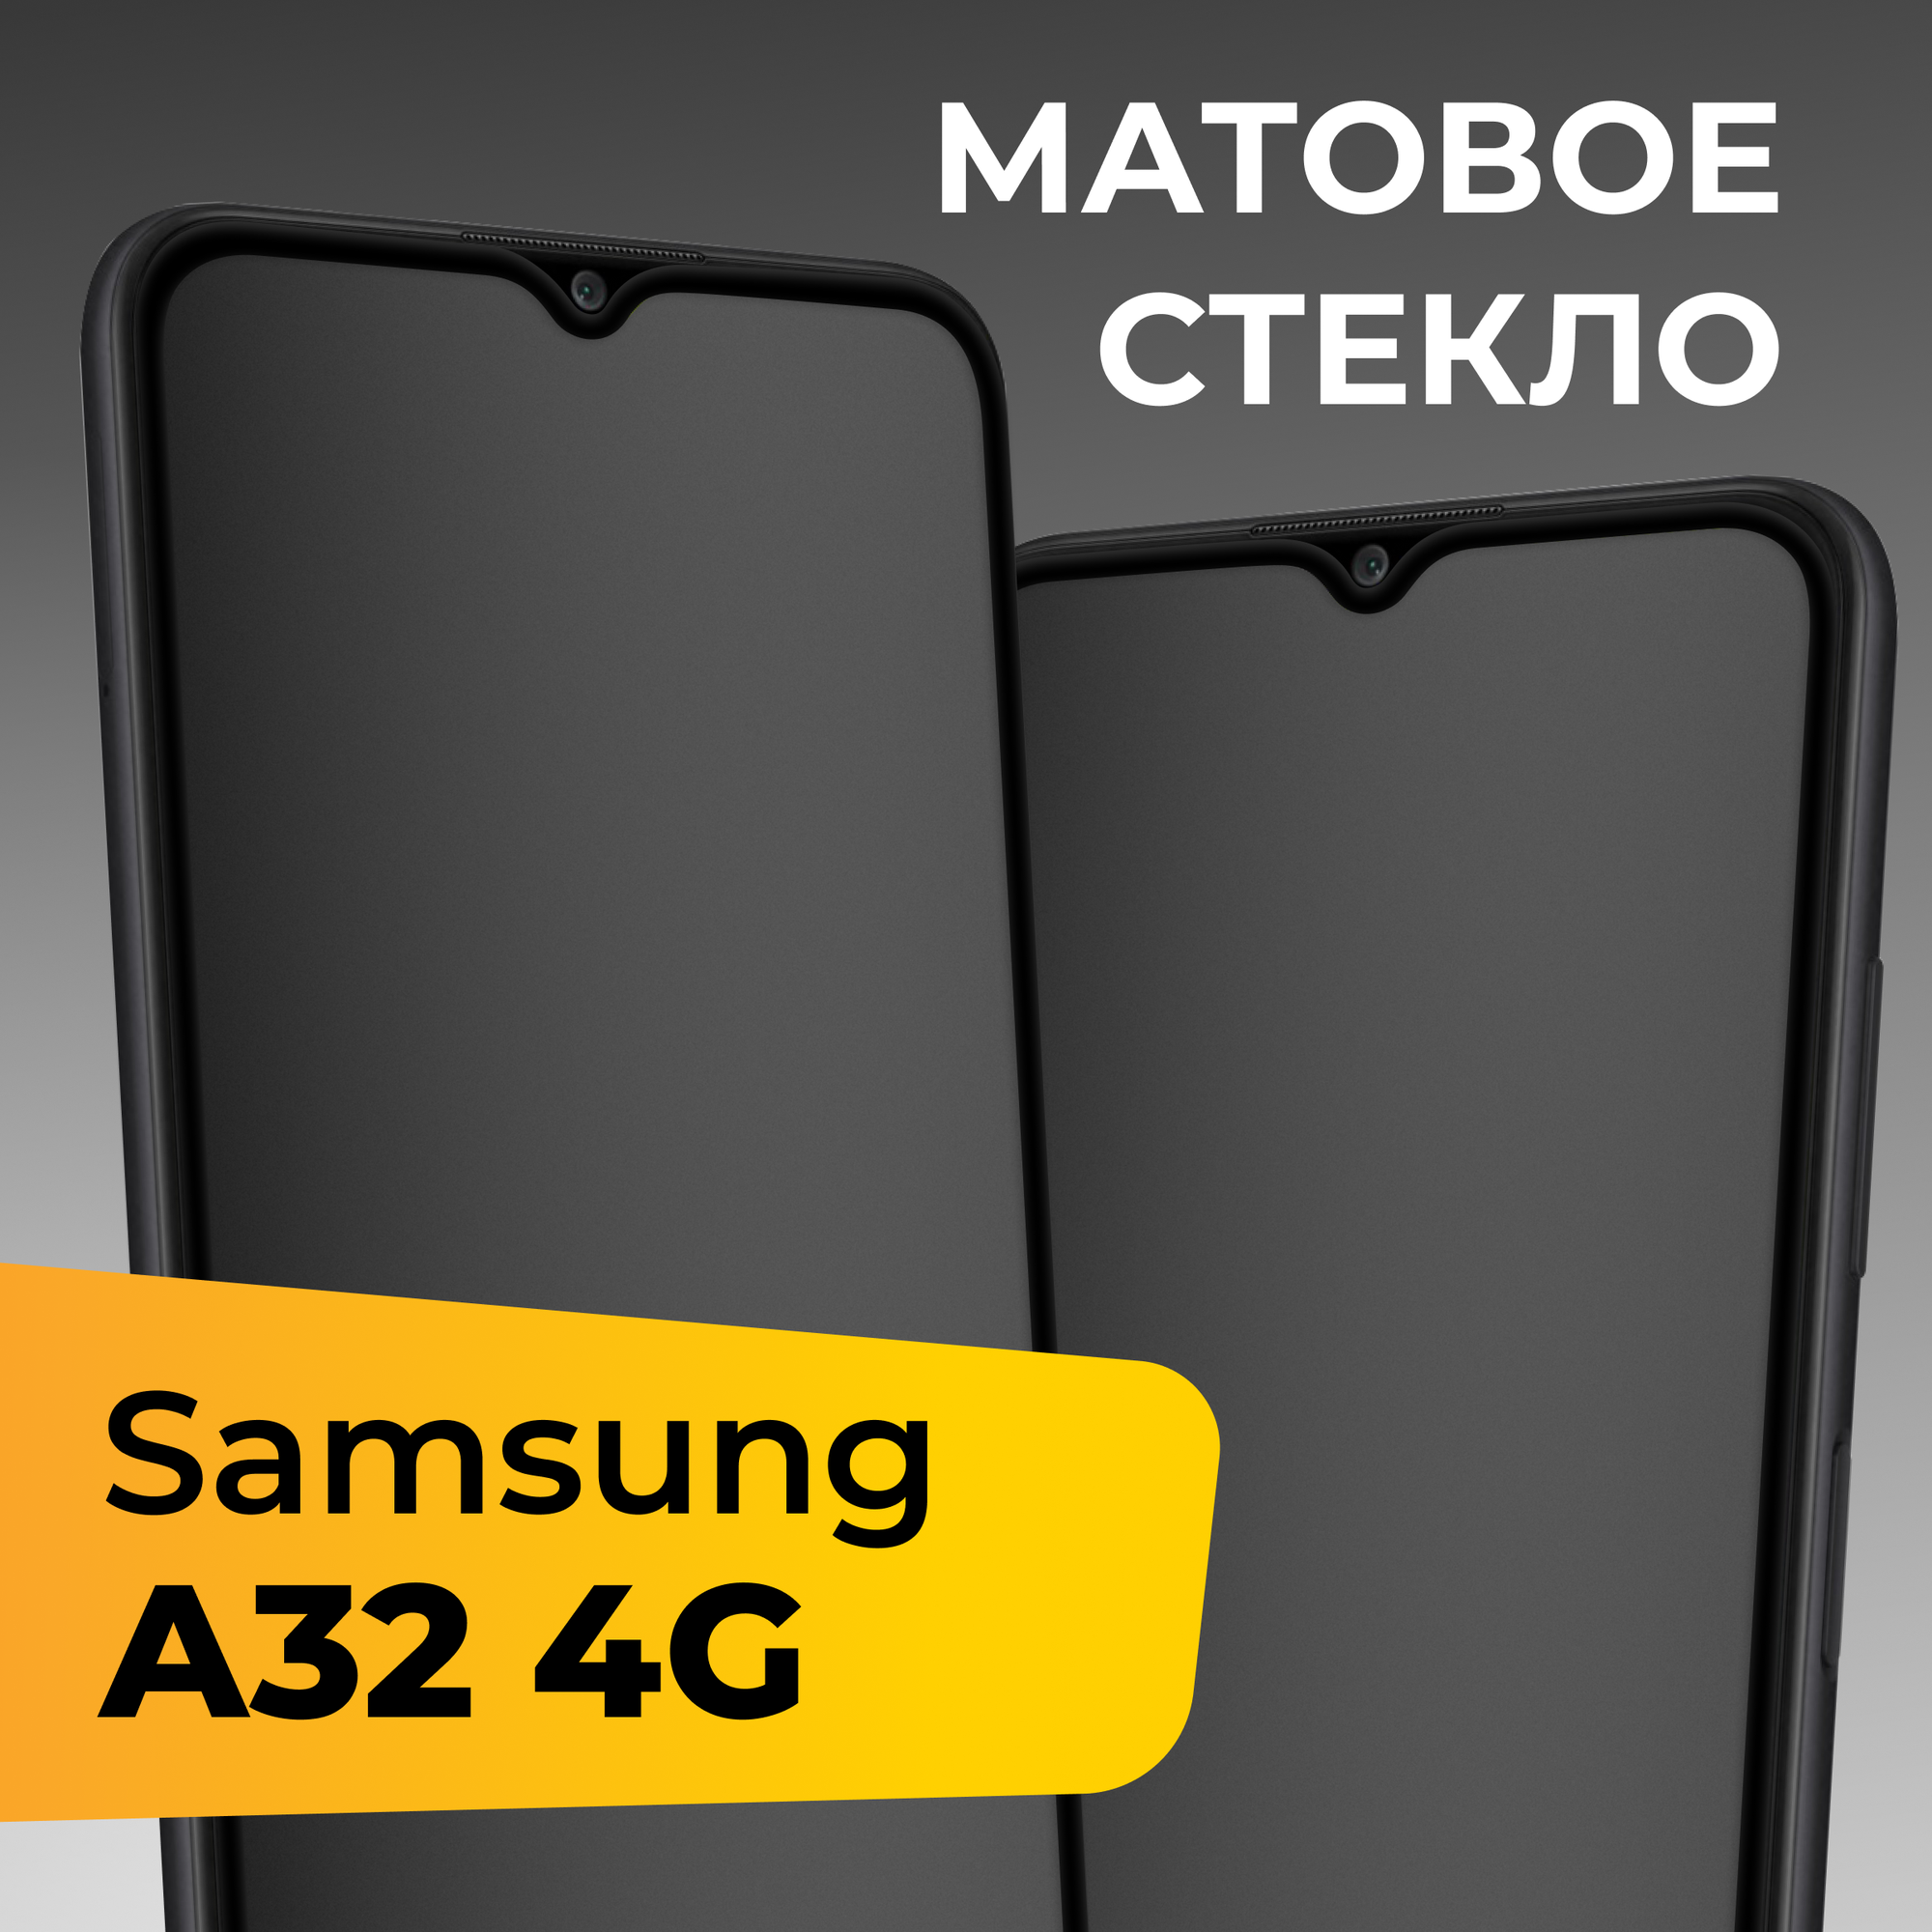 Матовое защитное стекло для телефона Samsung Galaxy A32 4G / Противоударное закаленное стекло на весь экран для смартфона Самсунг Галакси А32 4Г